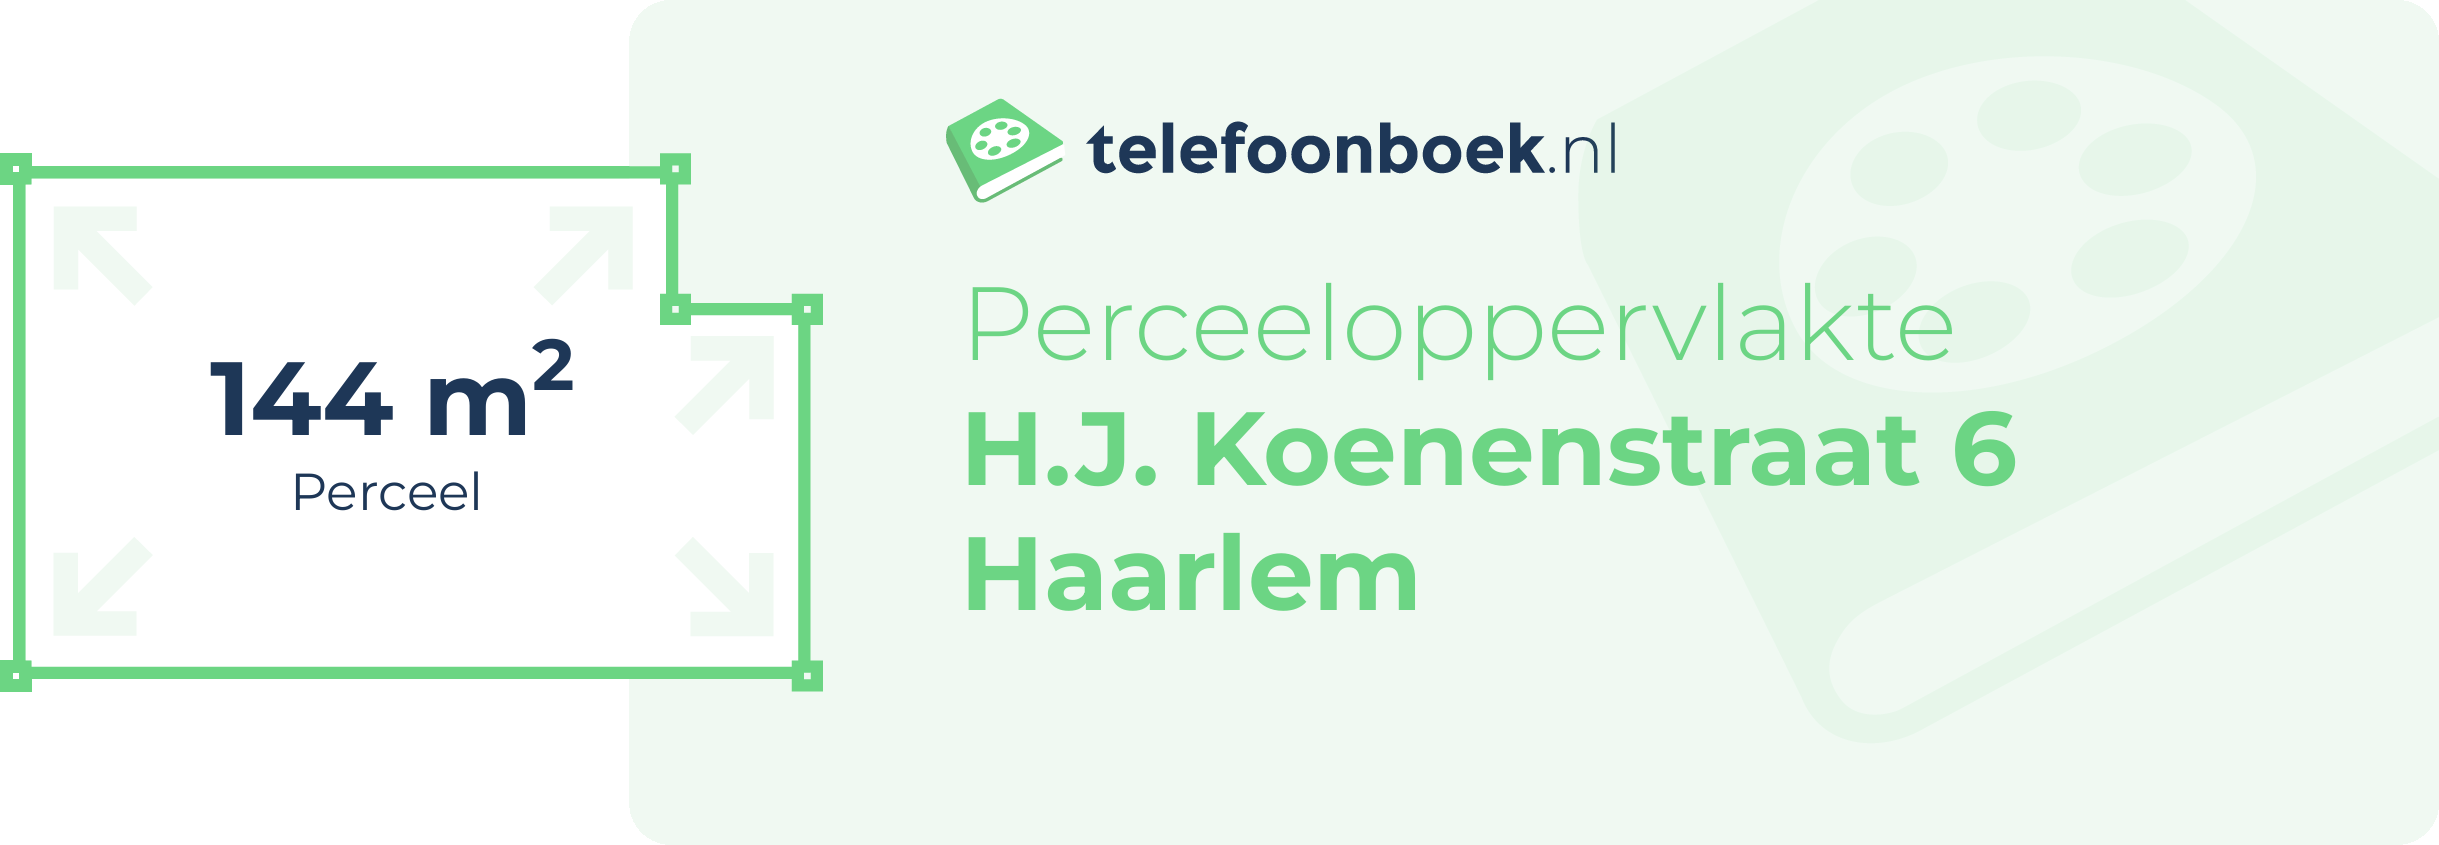 Perceeloppervlakte H.J. Koenenstraat 6 Haarlem